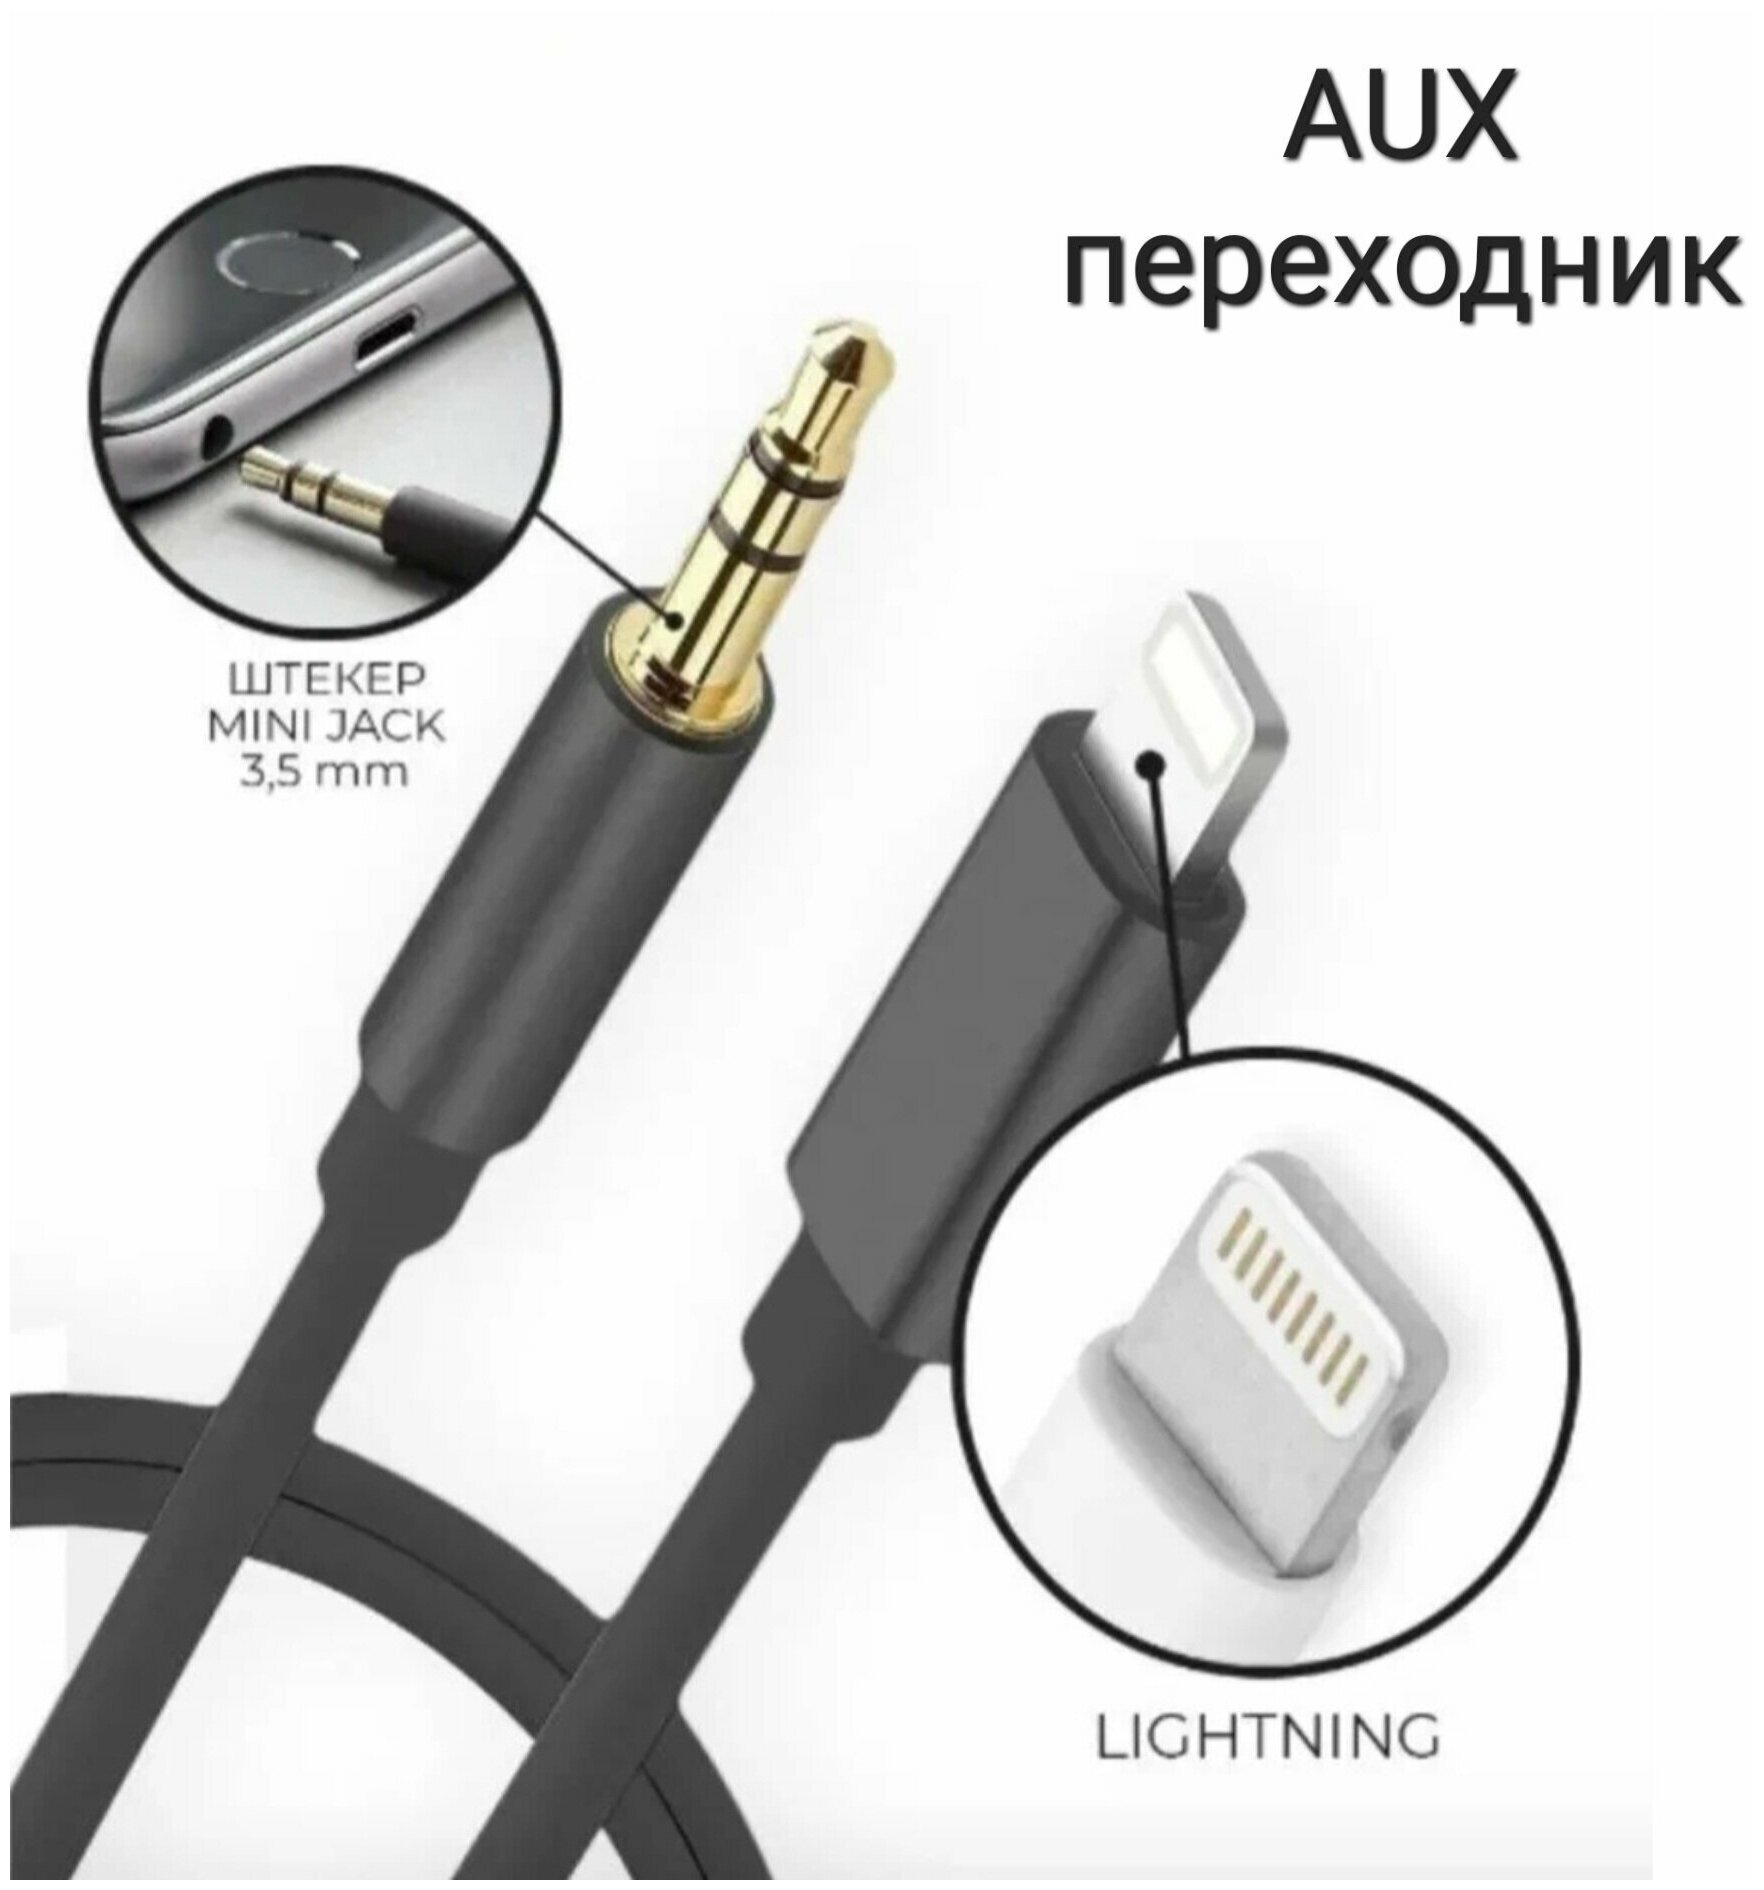 Переходник lightning 3.5 jack, AUX для айфона, Адаптер apple, кабель лайтнинг iPhone, переходник для наушников, aux кабель в машину